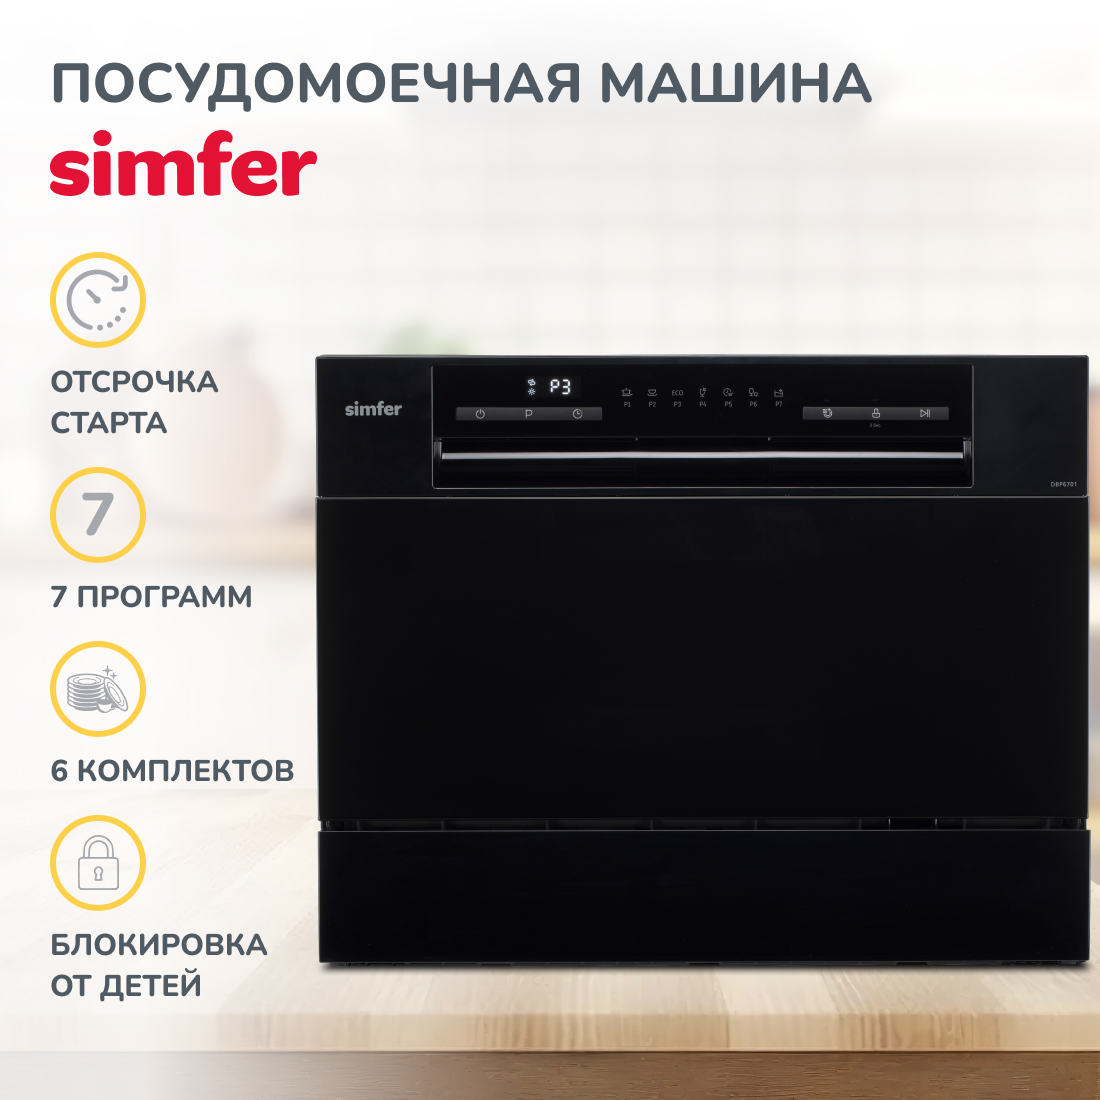 Настольная посудомоечная машина Simfer DBP6701, цвет черный